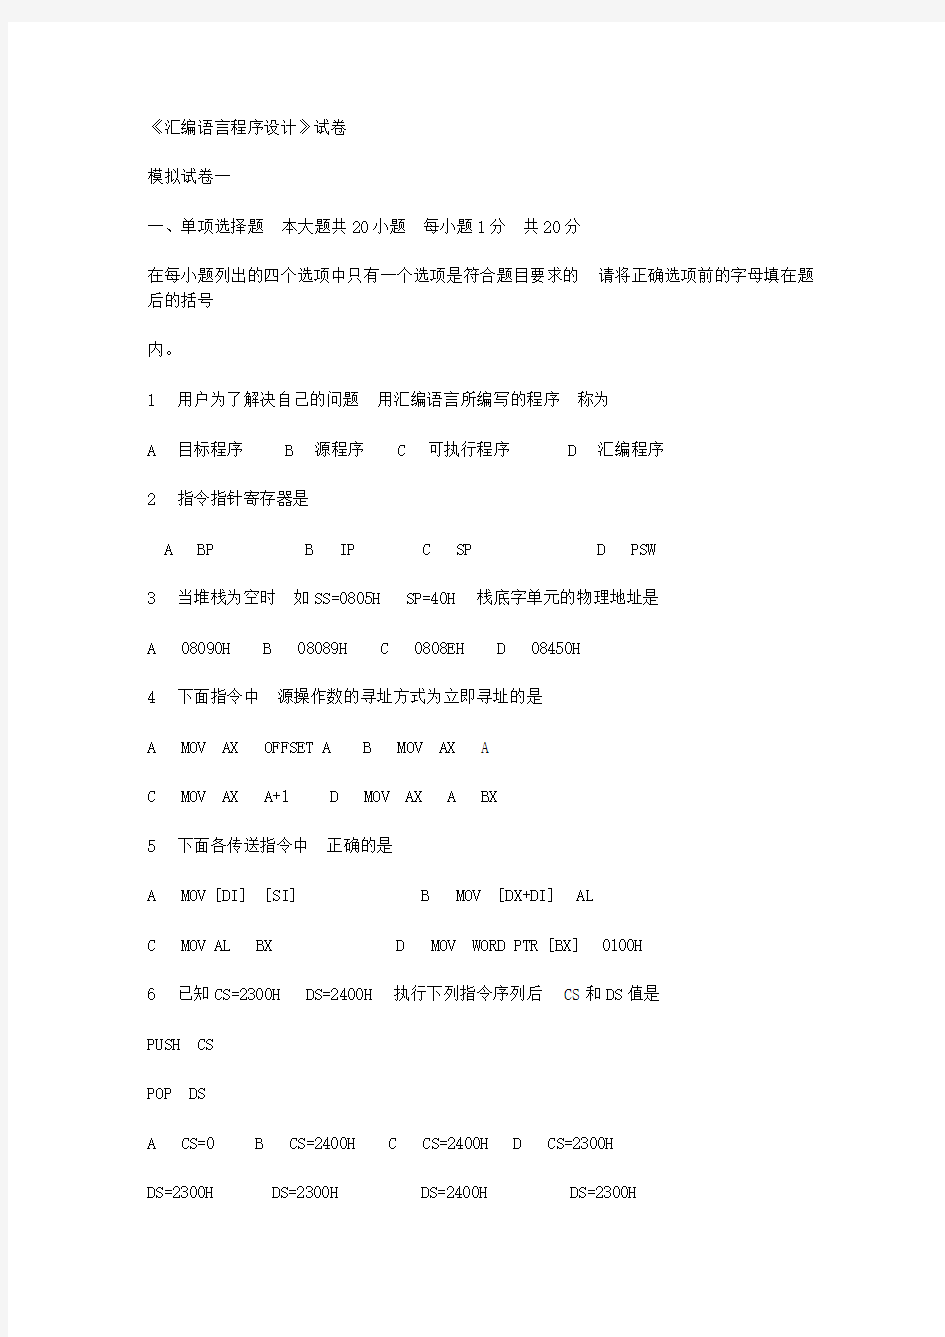 武汉理工大学汇编语言试题(三套_内含答案_2012年期末考试绝大部分是从上面出的)